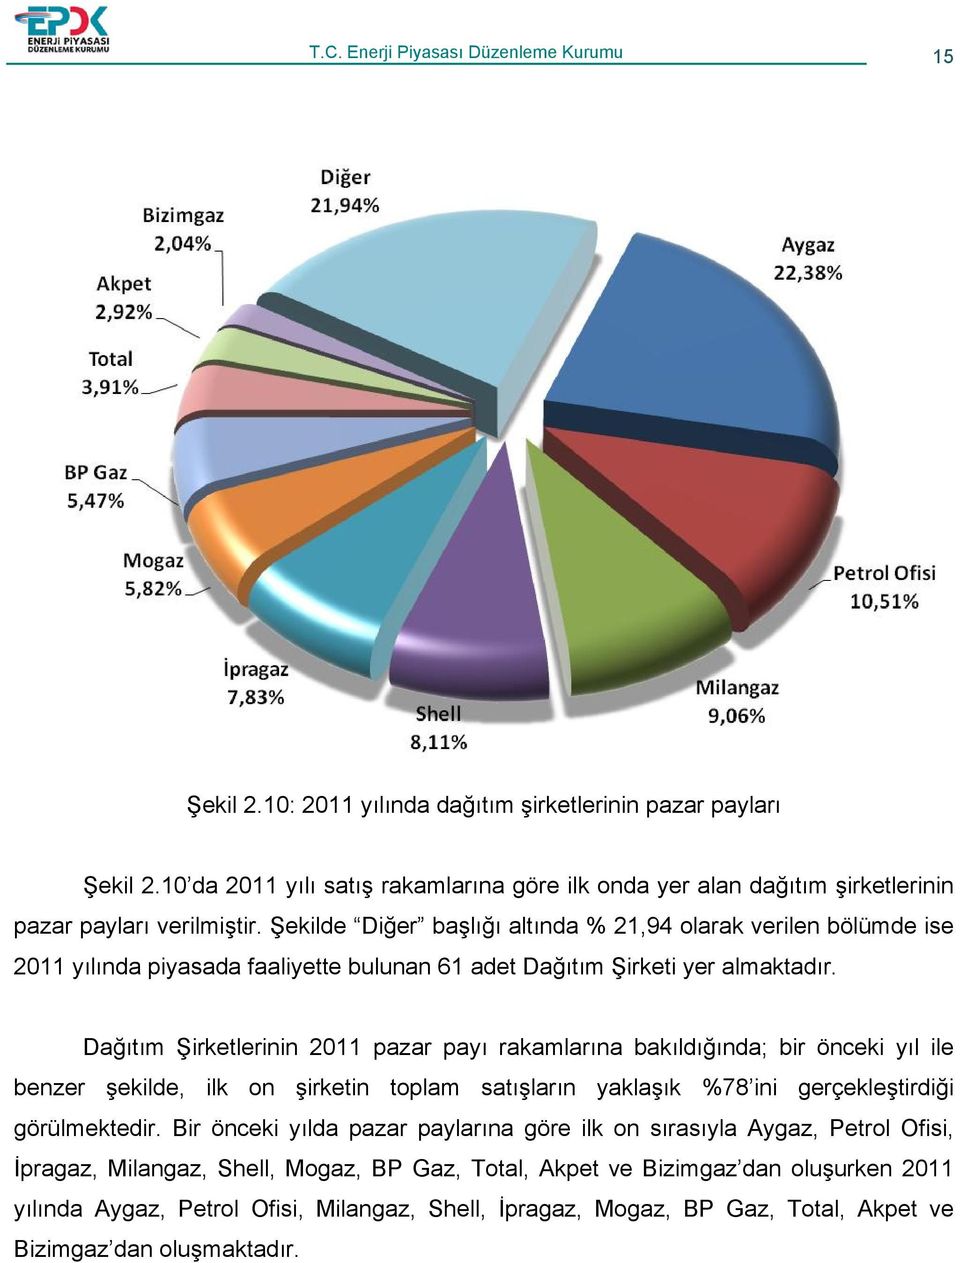 Şekilde Diğer başlığı altında % 21,94 olarak verilen bölümde ise 2011 yılında piyasada faaliyette bulunan 61 adet Dağıtım Şirketi yer almaktadır.